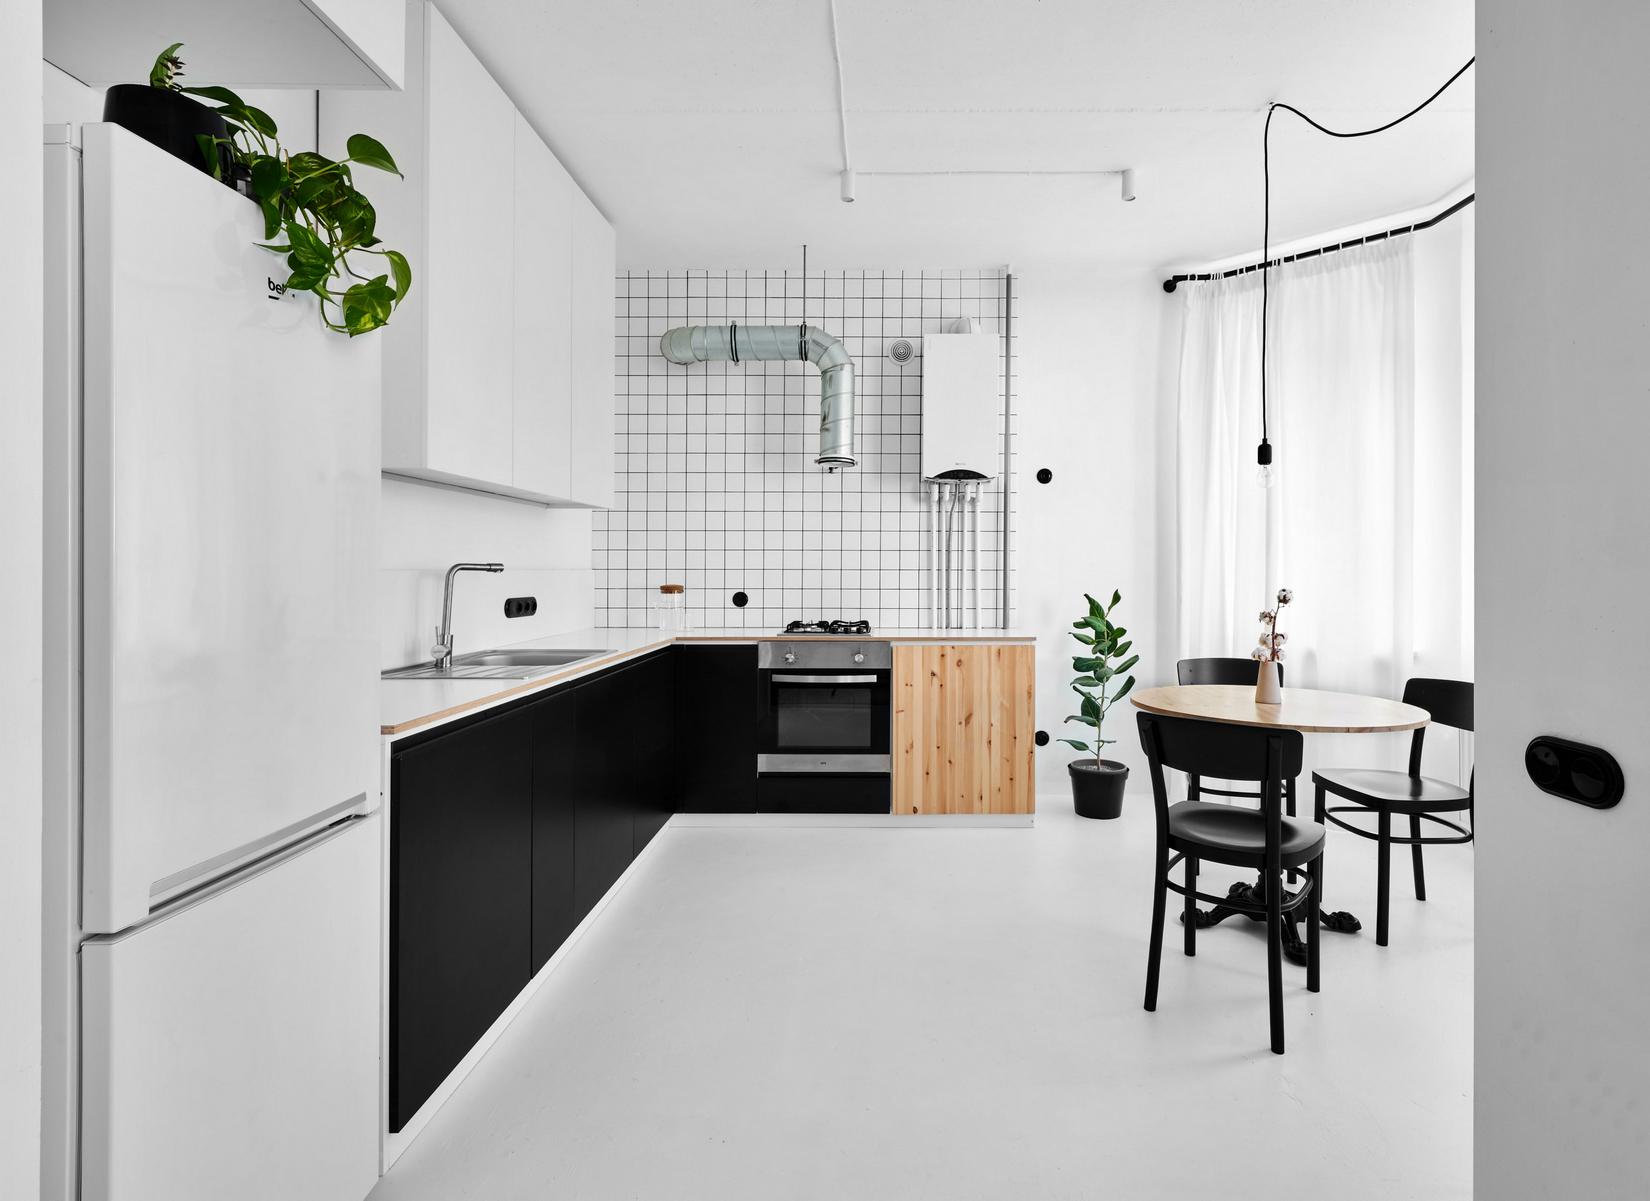 Phòng bếp lựa chọn thiết kế kiểu chữ L phù hợp với cấu trúc căn hộ. Tủ lưu trữ trên và dưới tương phản nhau với hai gam màu đen - trắng.